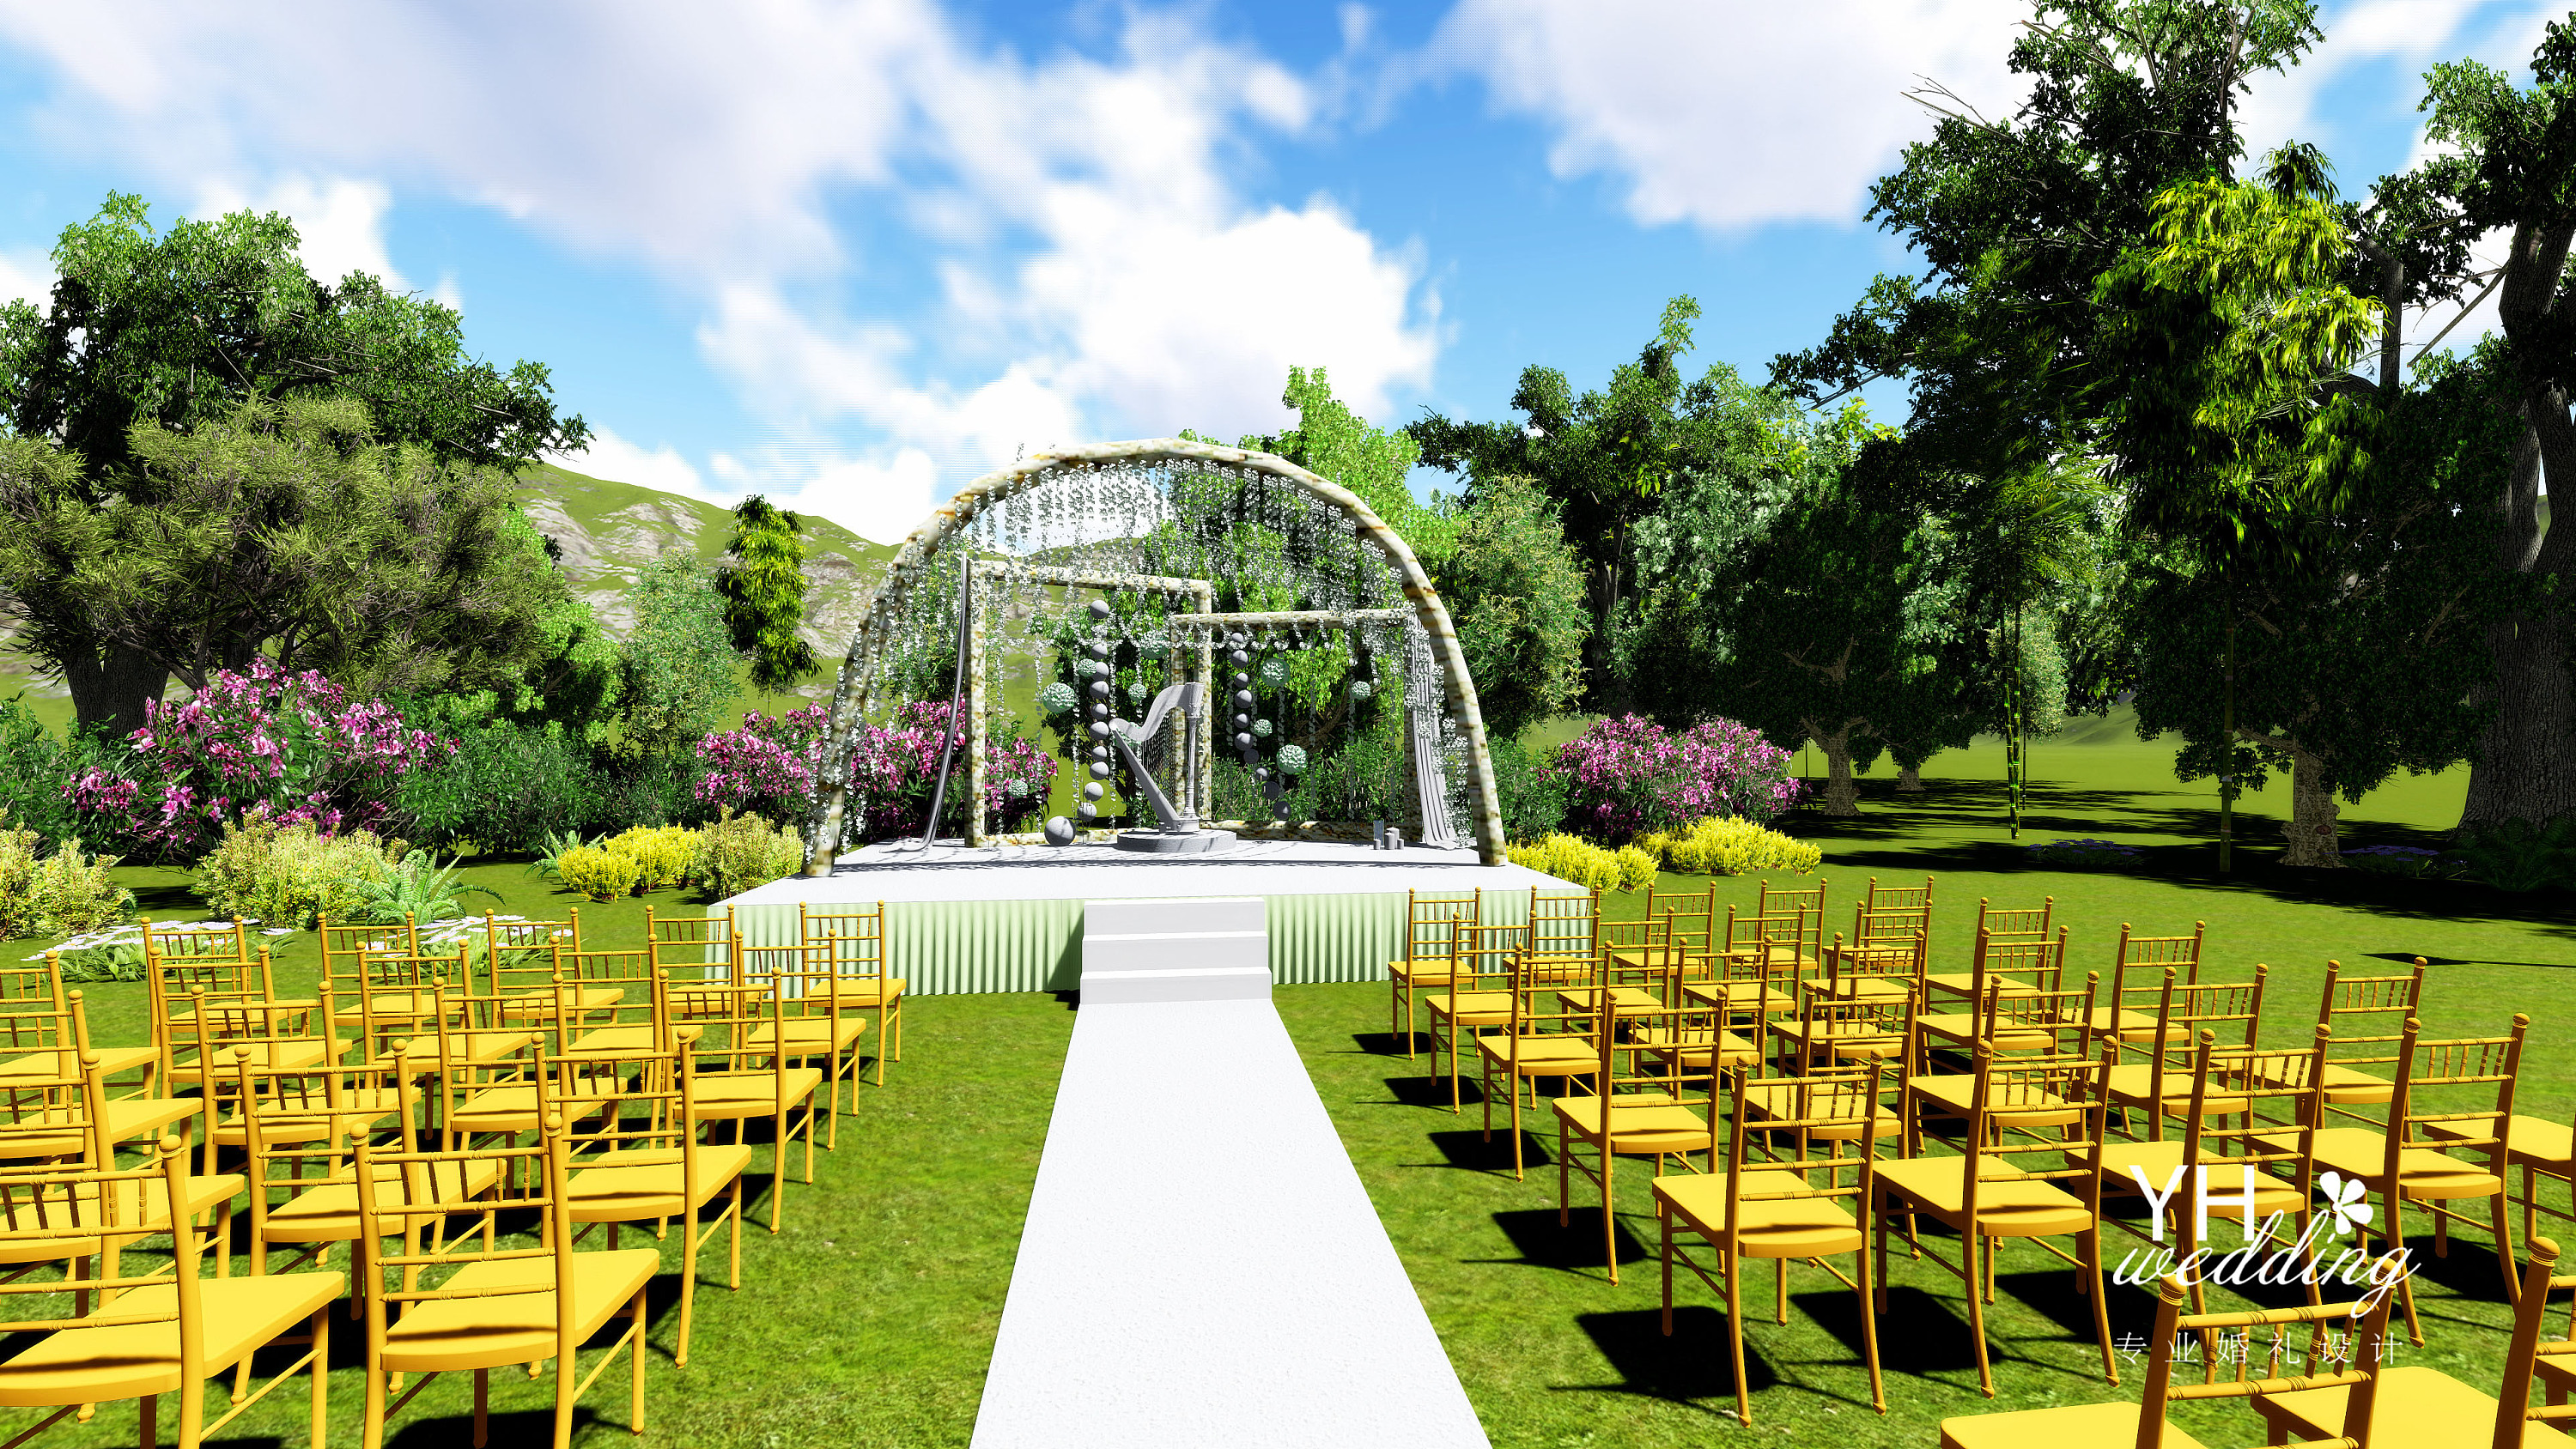 yhwedding婚礼设计:清新绿系户外婚礼舞台3d效果图 可爱大白又入镜了